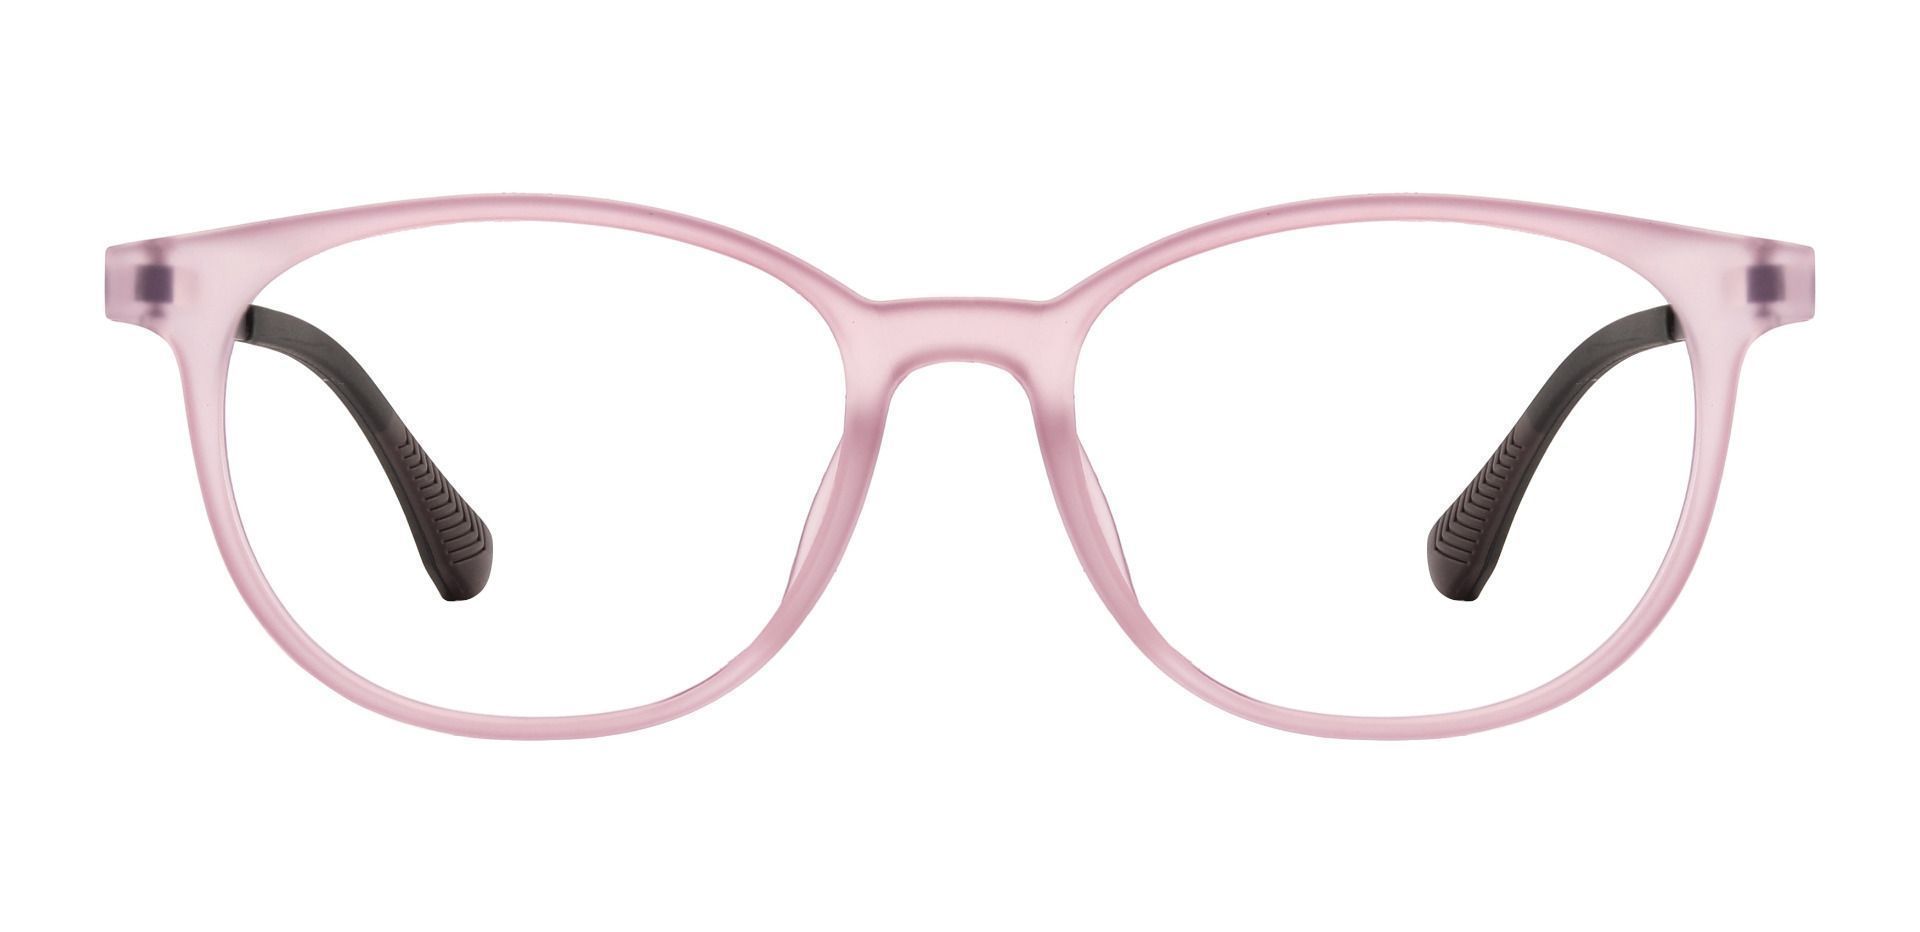 Hannigan Oval Prescription Glasses - Purple